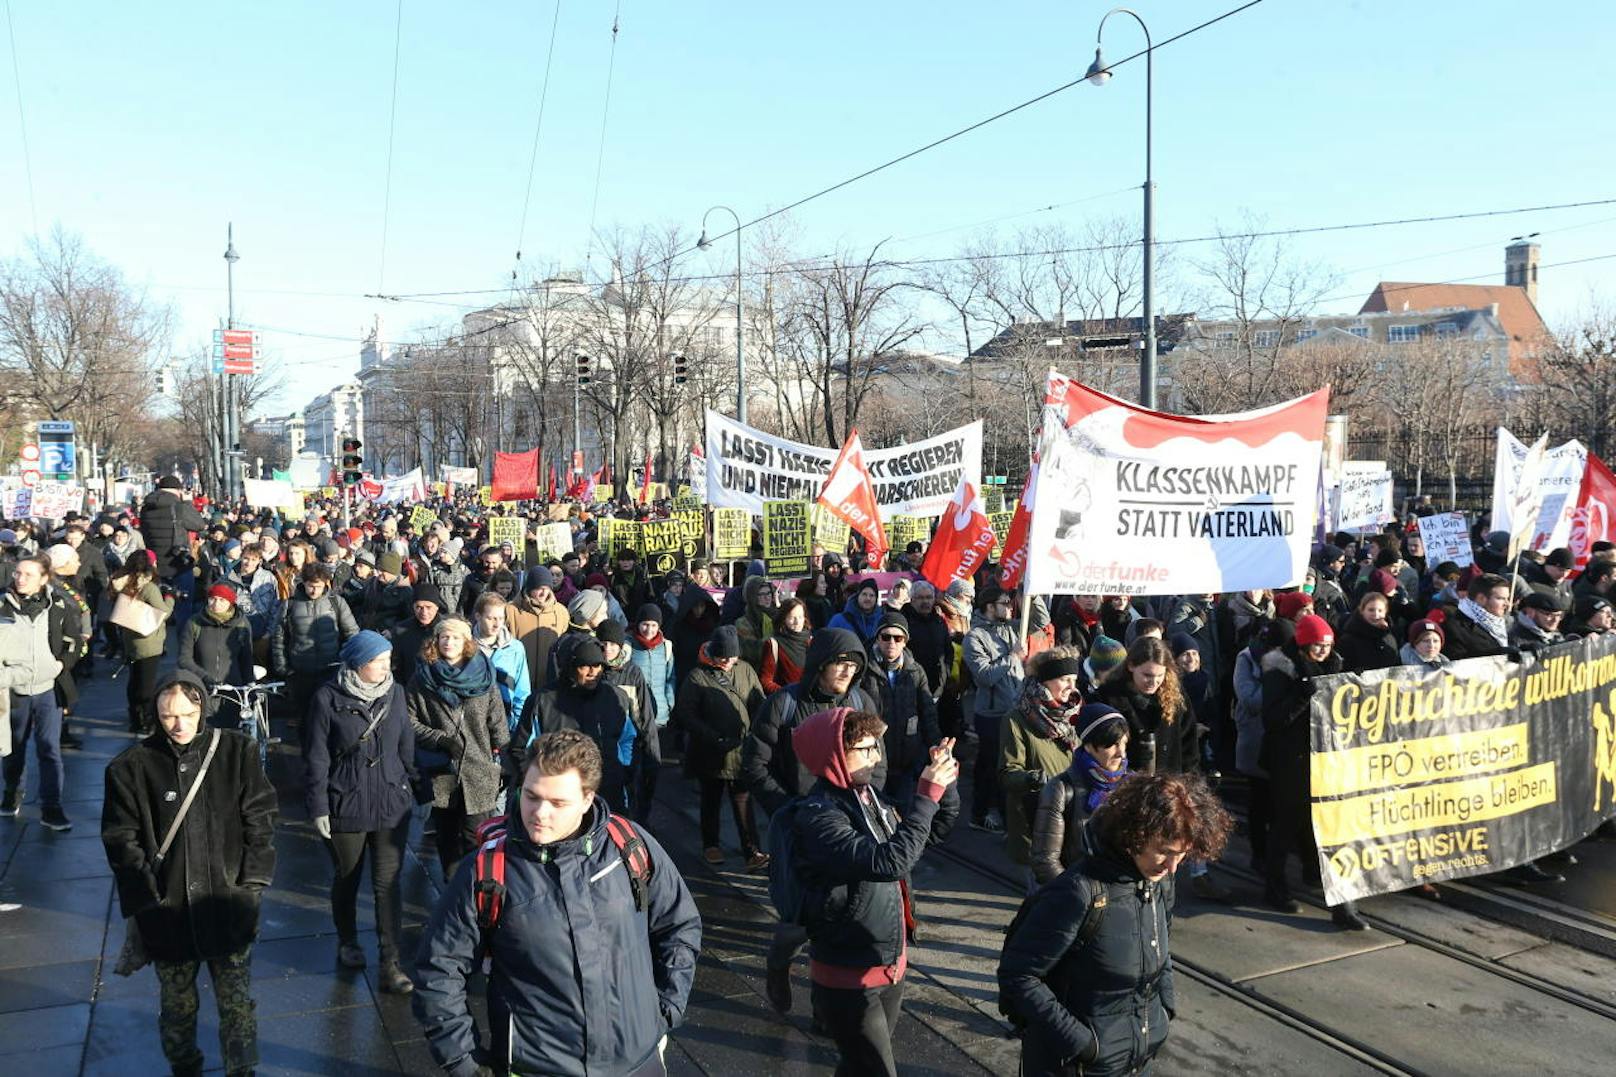 <b>Dezember: Demos gegen neue Regierung
</b>Rund 6.000 Teilnehmer protestierten in Wien gegen die neue ÖVP-FPÖ-Regierung. <a href="https://www.heute.at/politik/news/story/Demonstration-Demo-Deshalb-sind-Tausende-gegen--sterreichs-neue-Regierung-aufmarschiert-55910469">Hier geht's zur Geschichte</a>